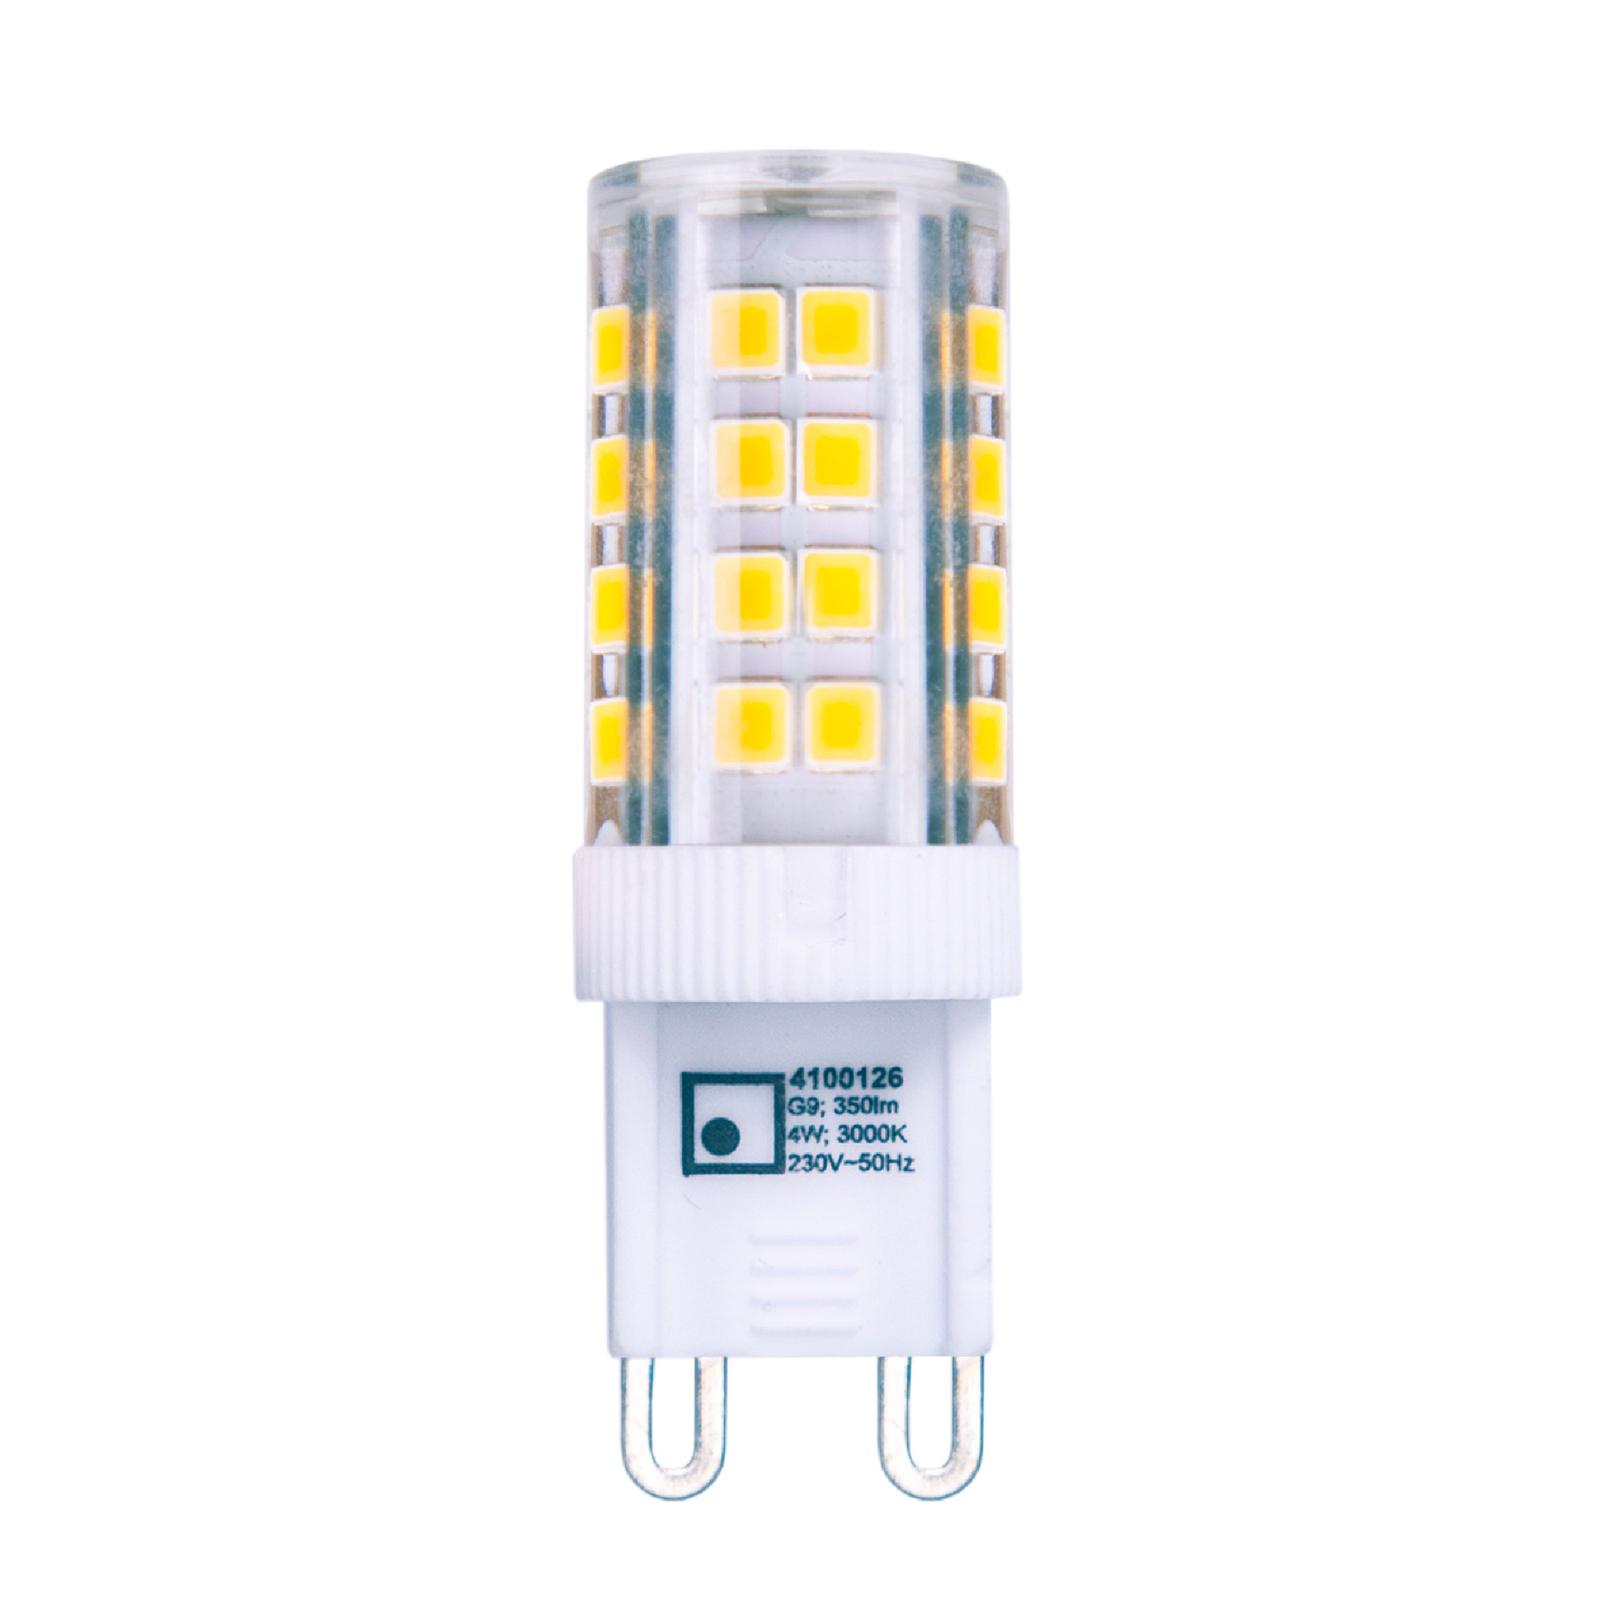 Bi-pin LED bulb G9 3.5 W warm white 350 lm 6-pack